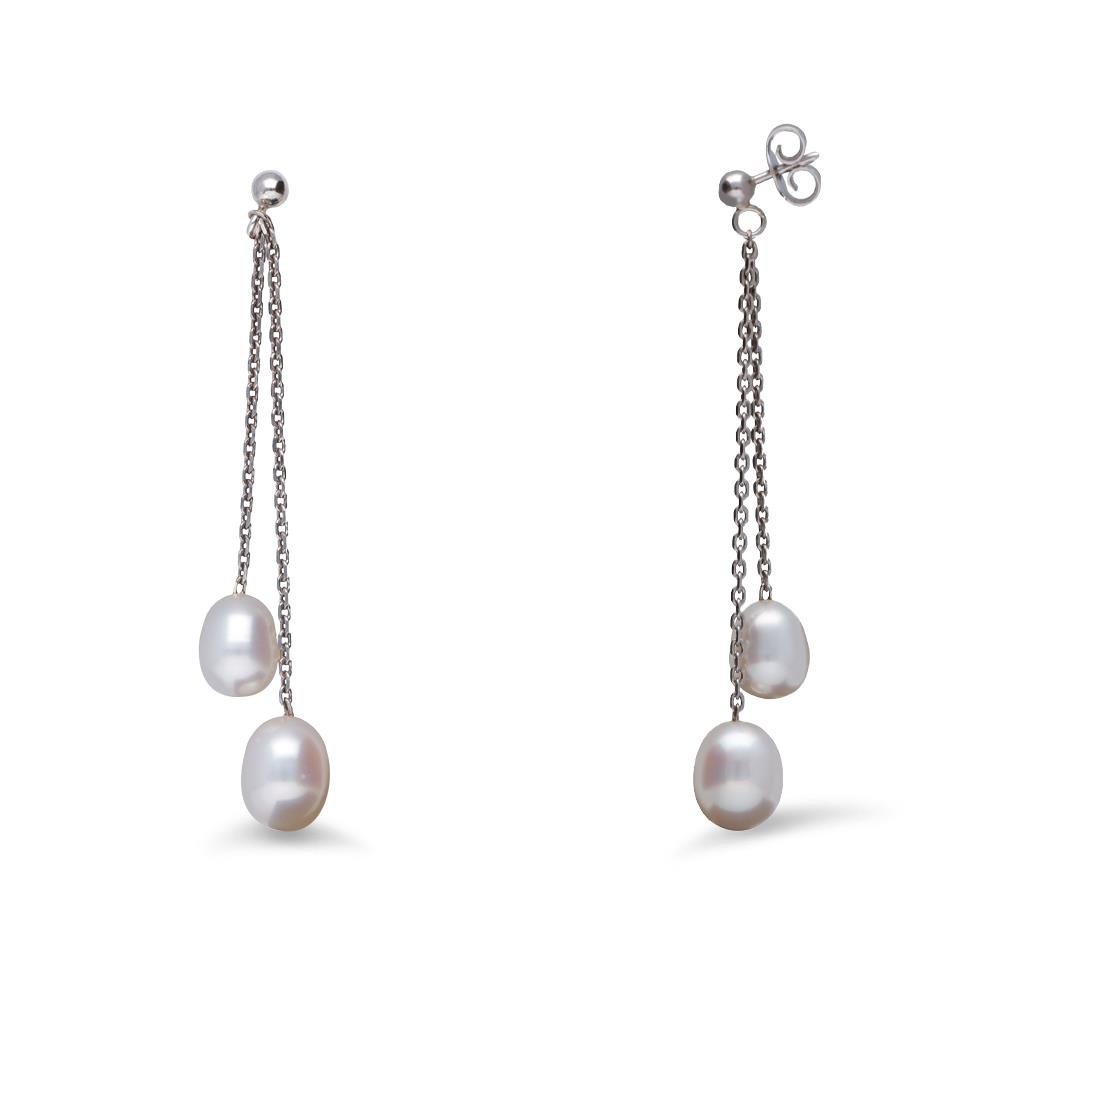 Orecchini pendenti in argento con perle a goccia - MAYUMI